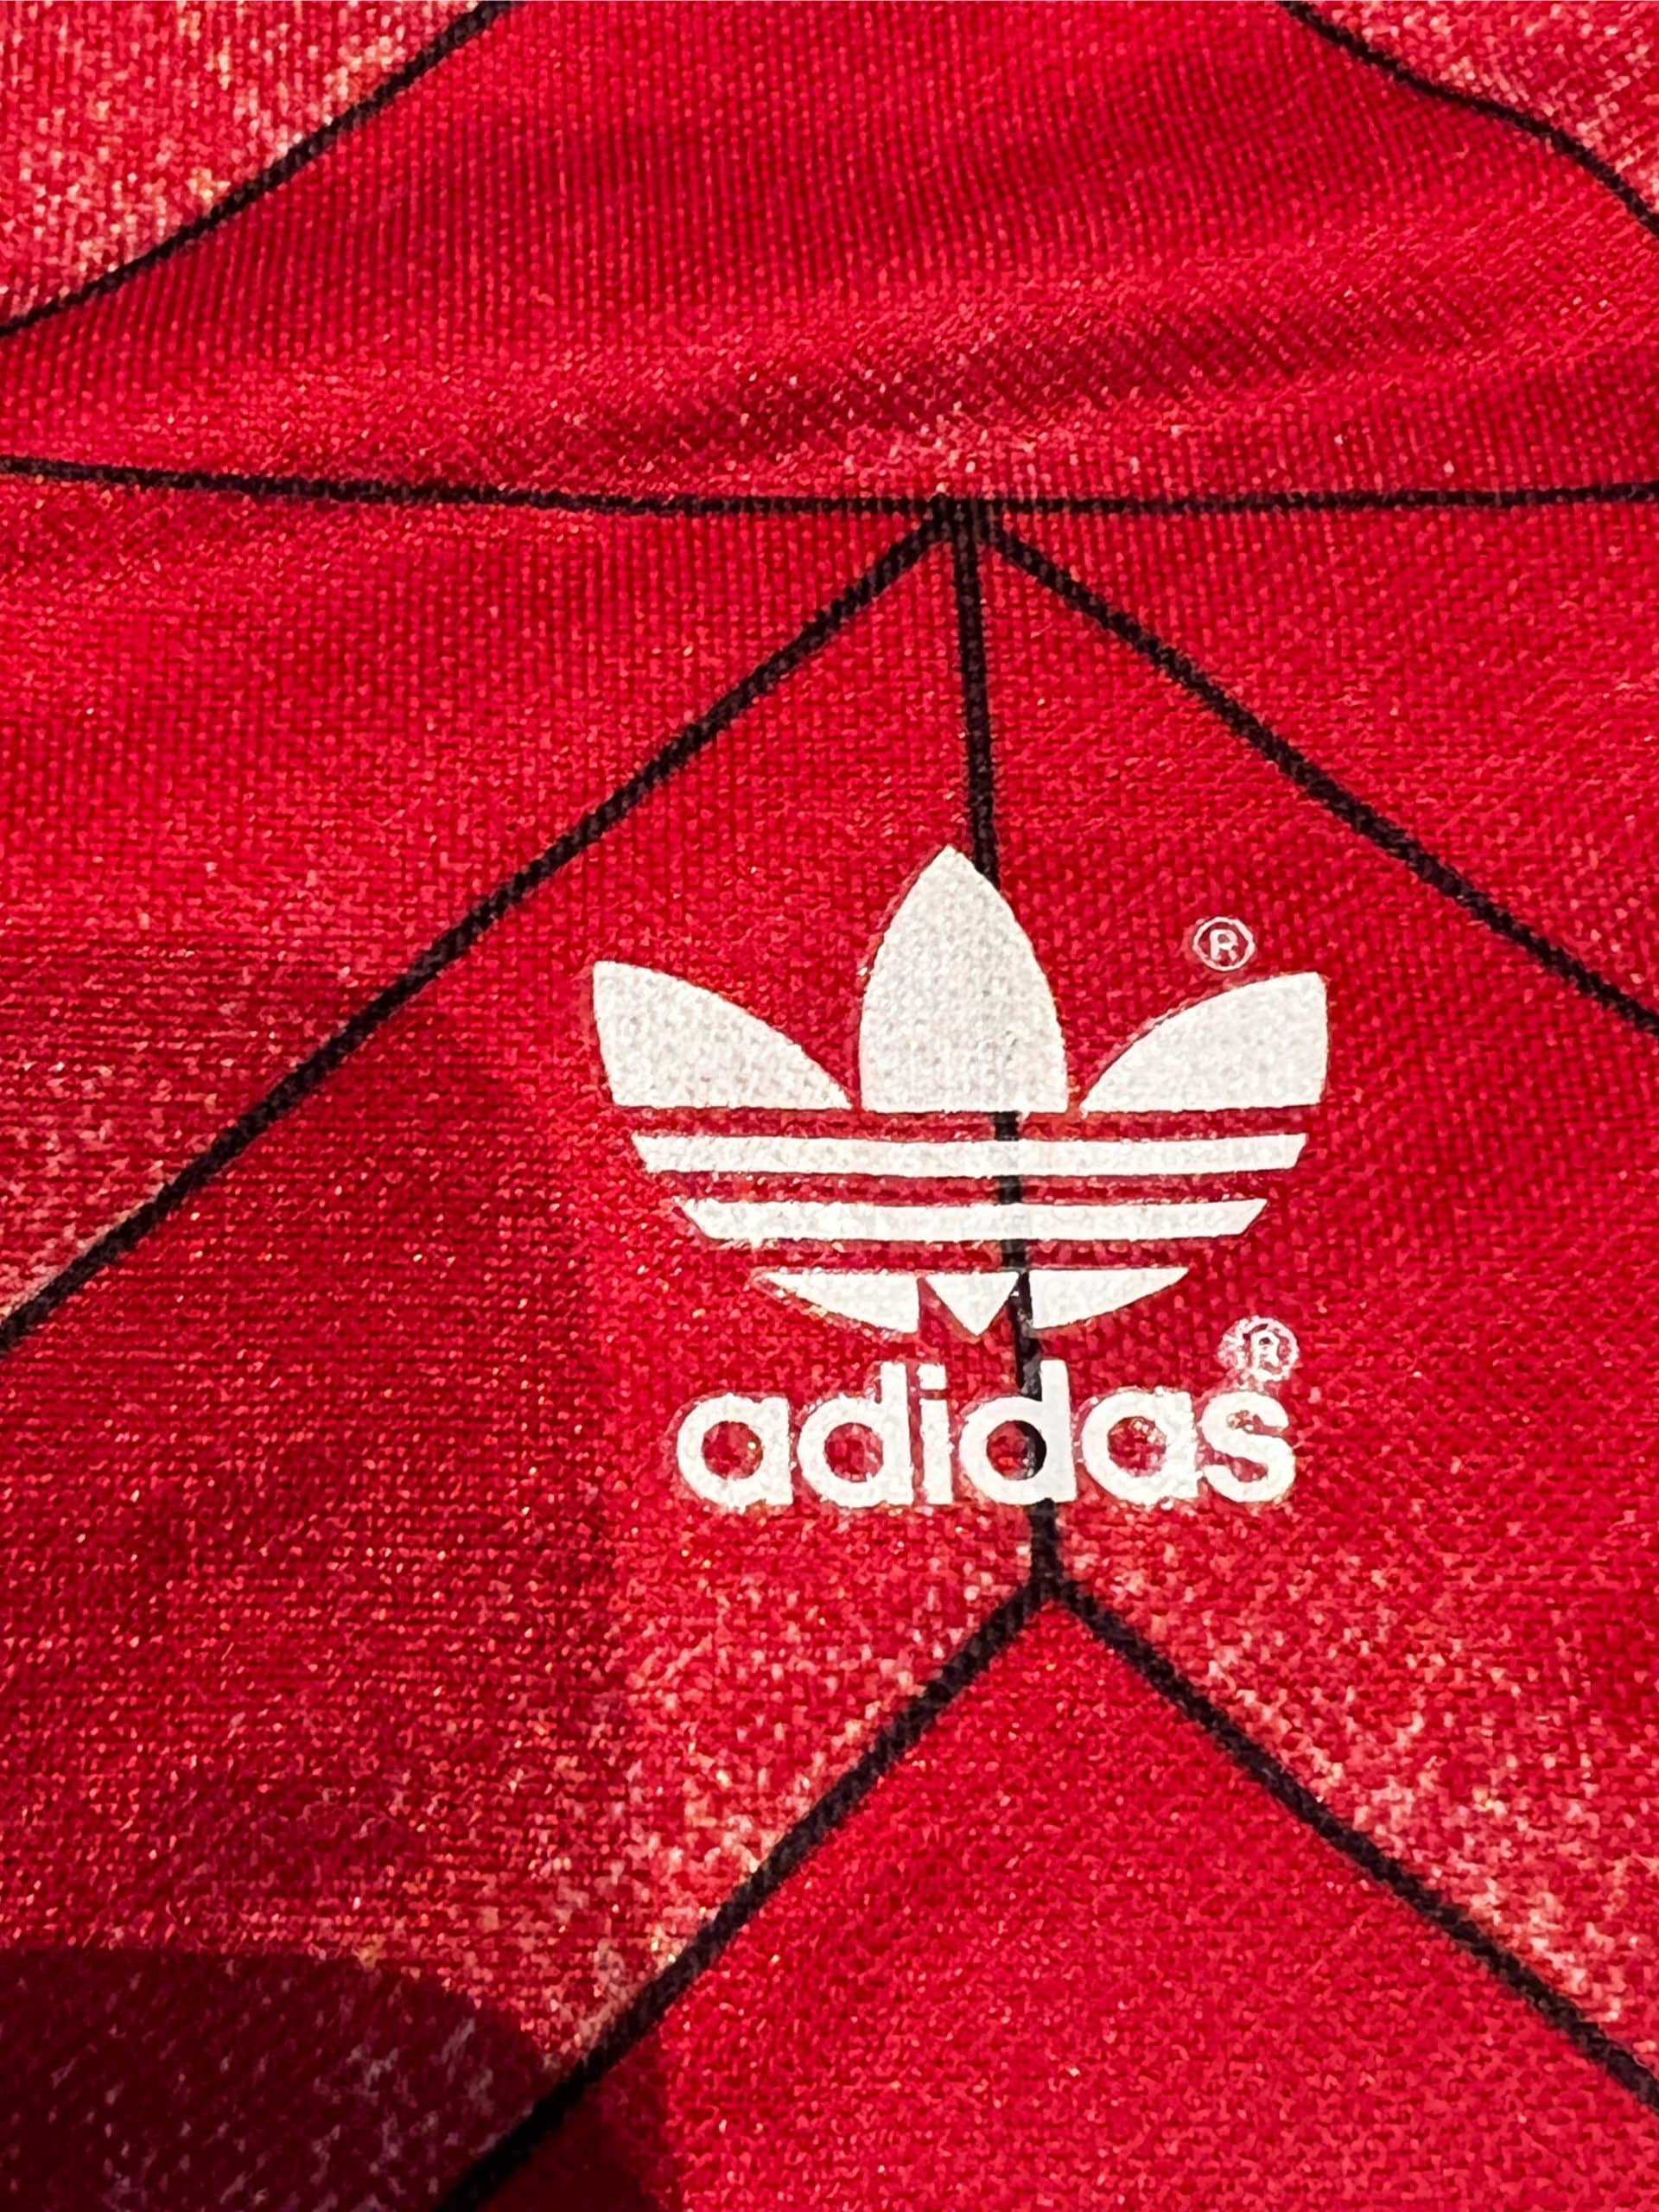 1988 Adidas Cccp Ipswich Template Shirt - YFS - Your Football Shirt